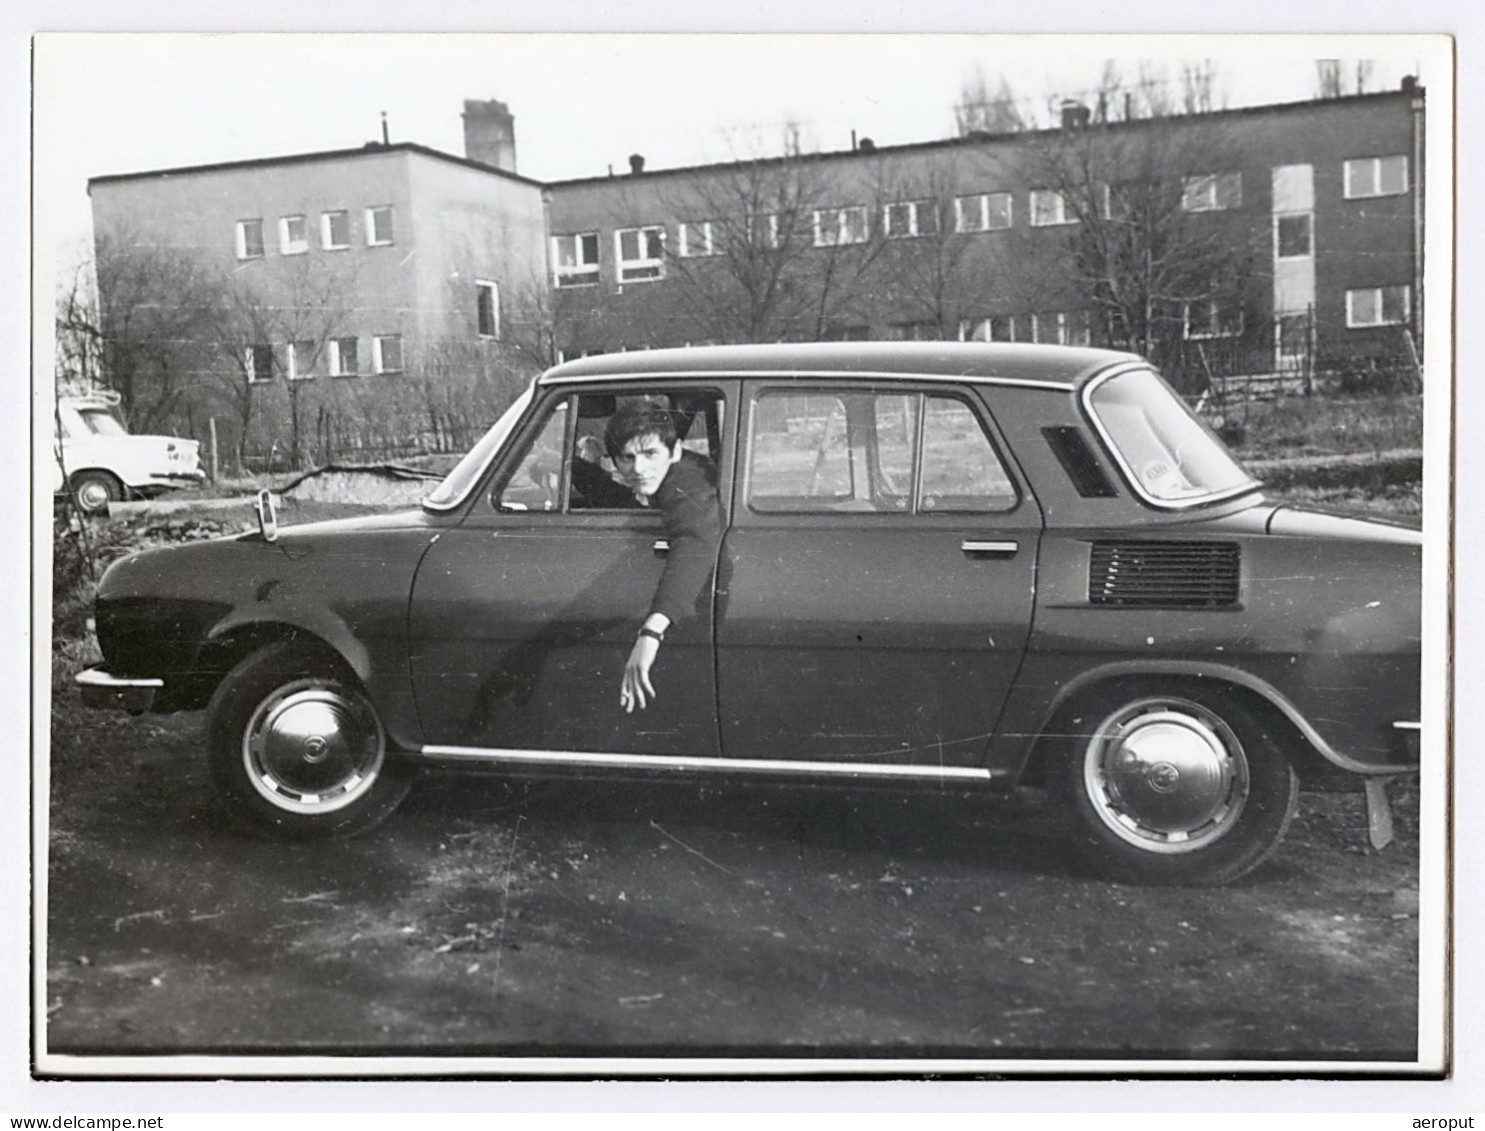 Photo Ancienne, Voiture Skoda 110, Jeune Homme Conducteur Posant Avec Une Cigarette à La Main, Années 1970 - Automobili